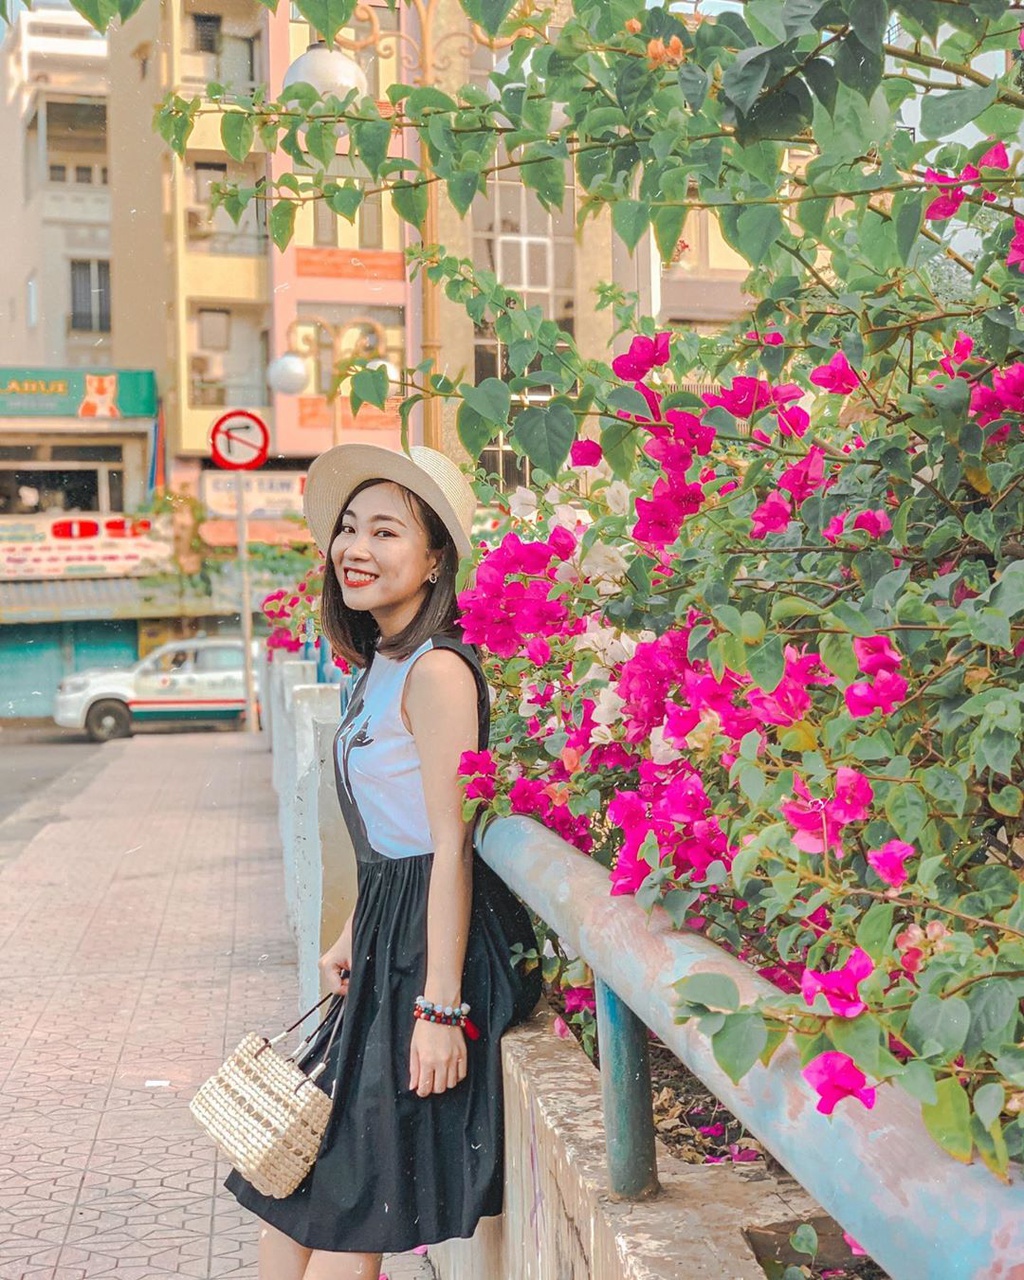 Hoa giấy khoe sắc trên góc phố Sài thành